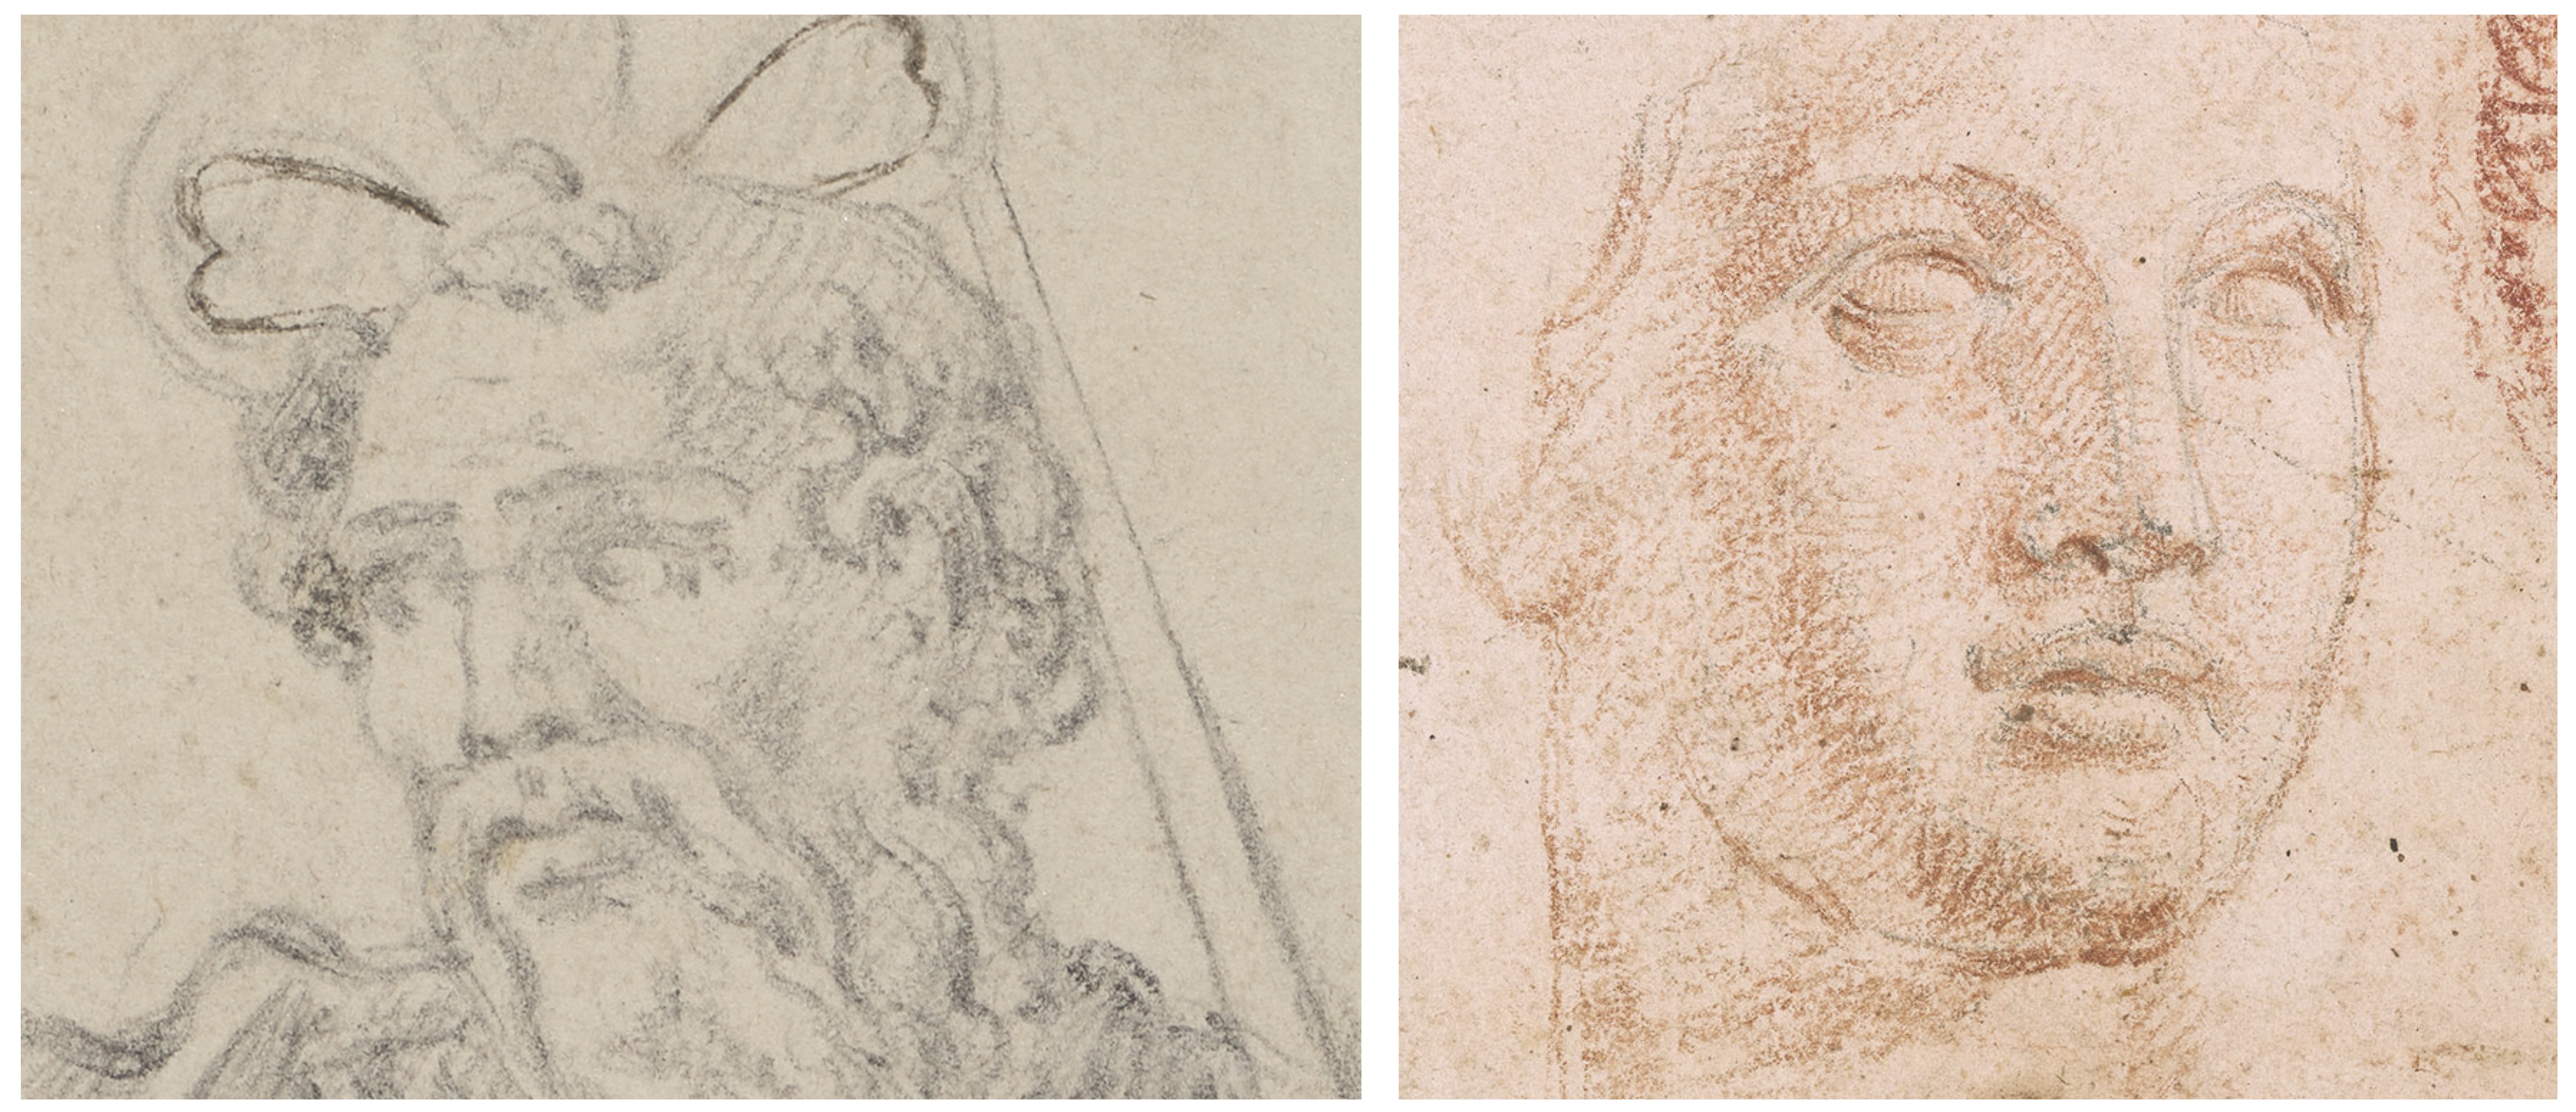 Detailvergleich zweier Kopf-Zeichnungen von Piranesi